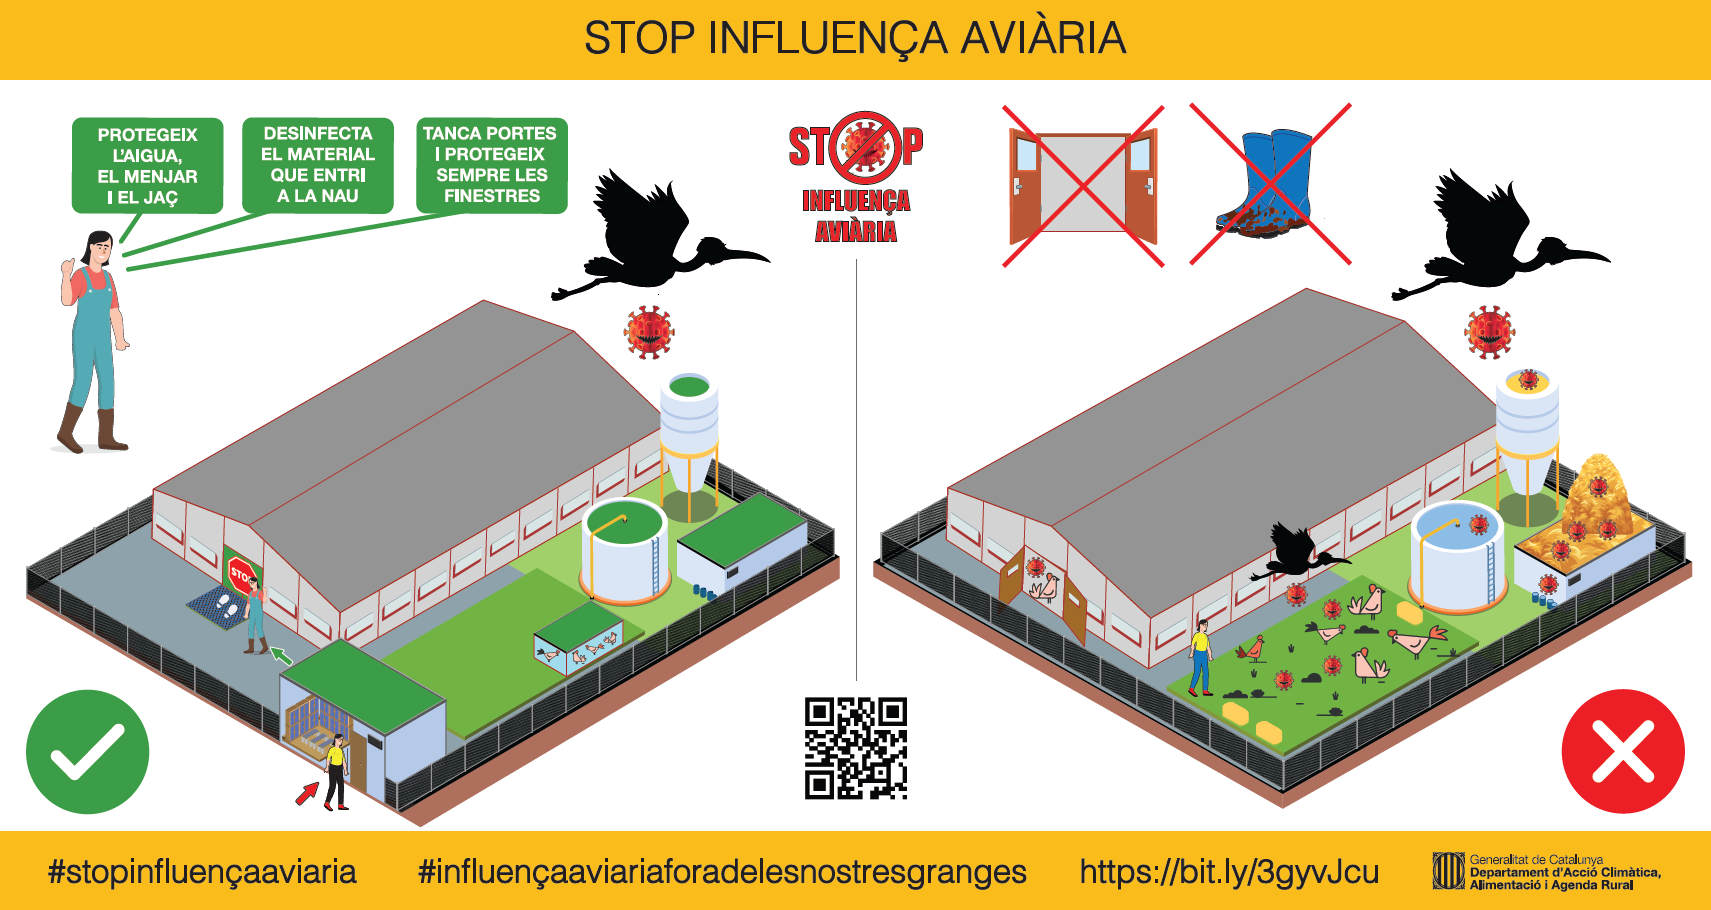 La Generalitat alerta d'un focus d'influença aviària a Arenys de Mar